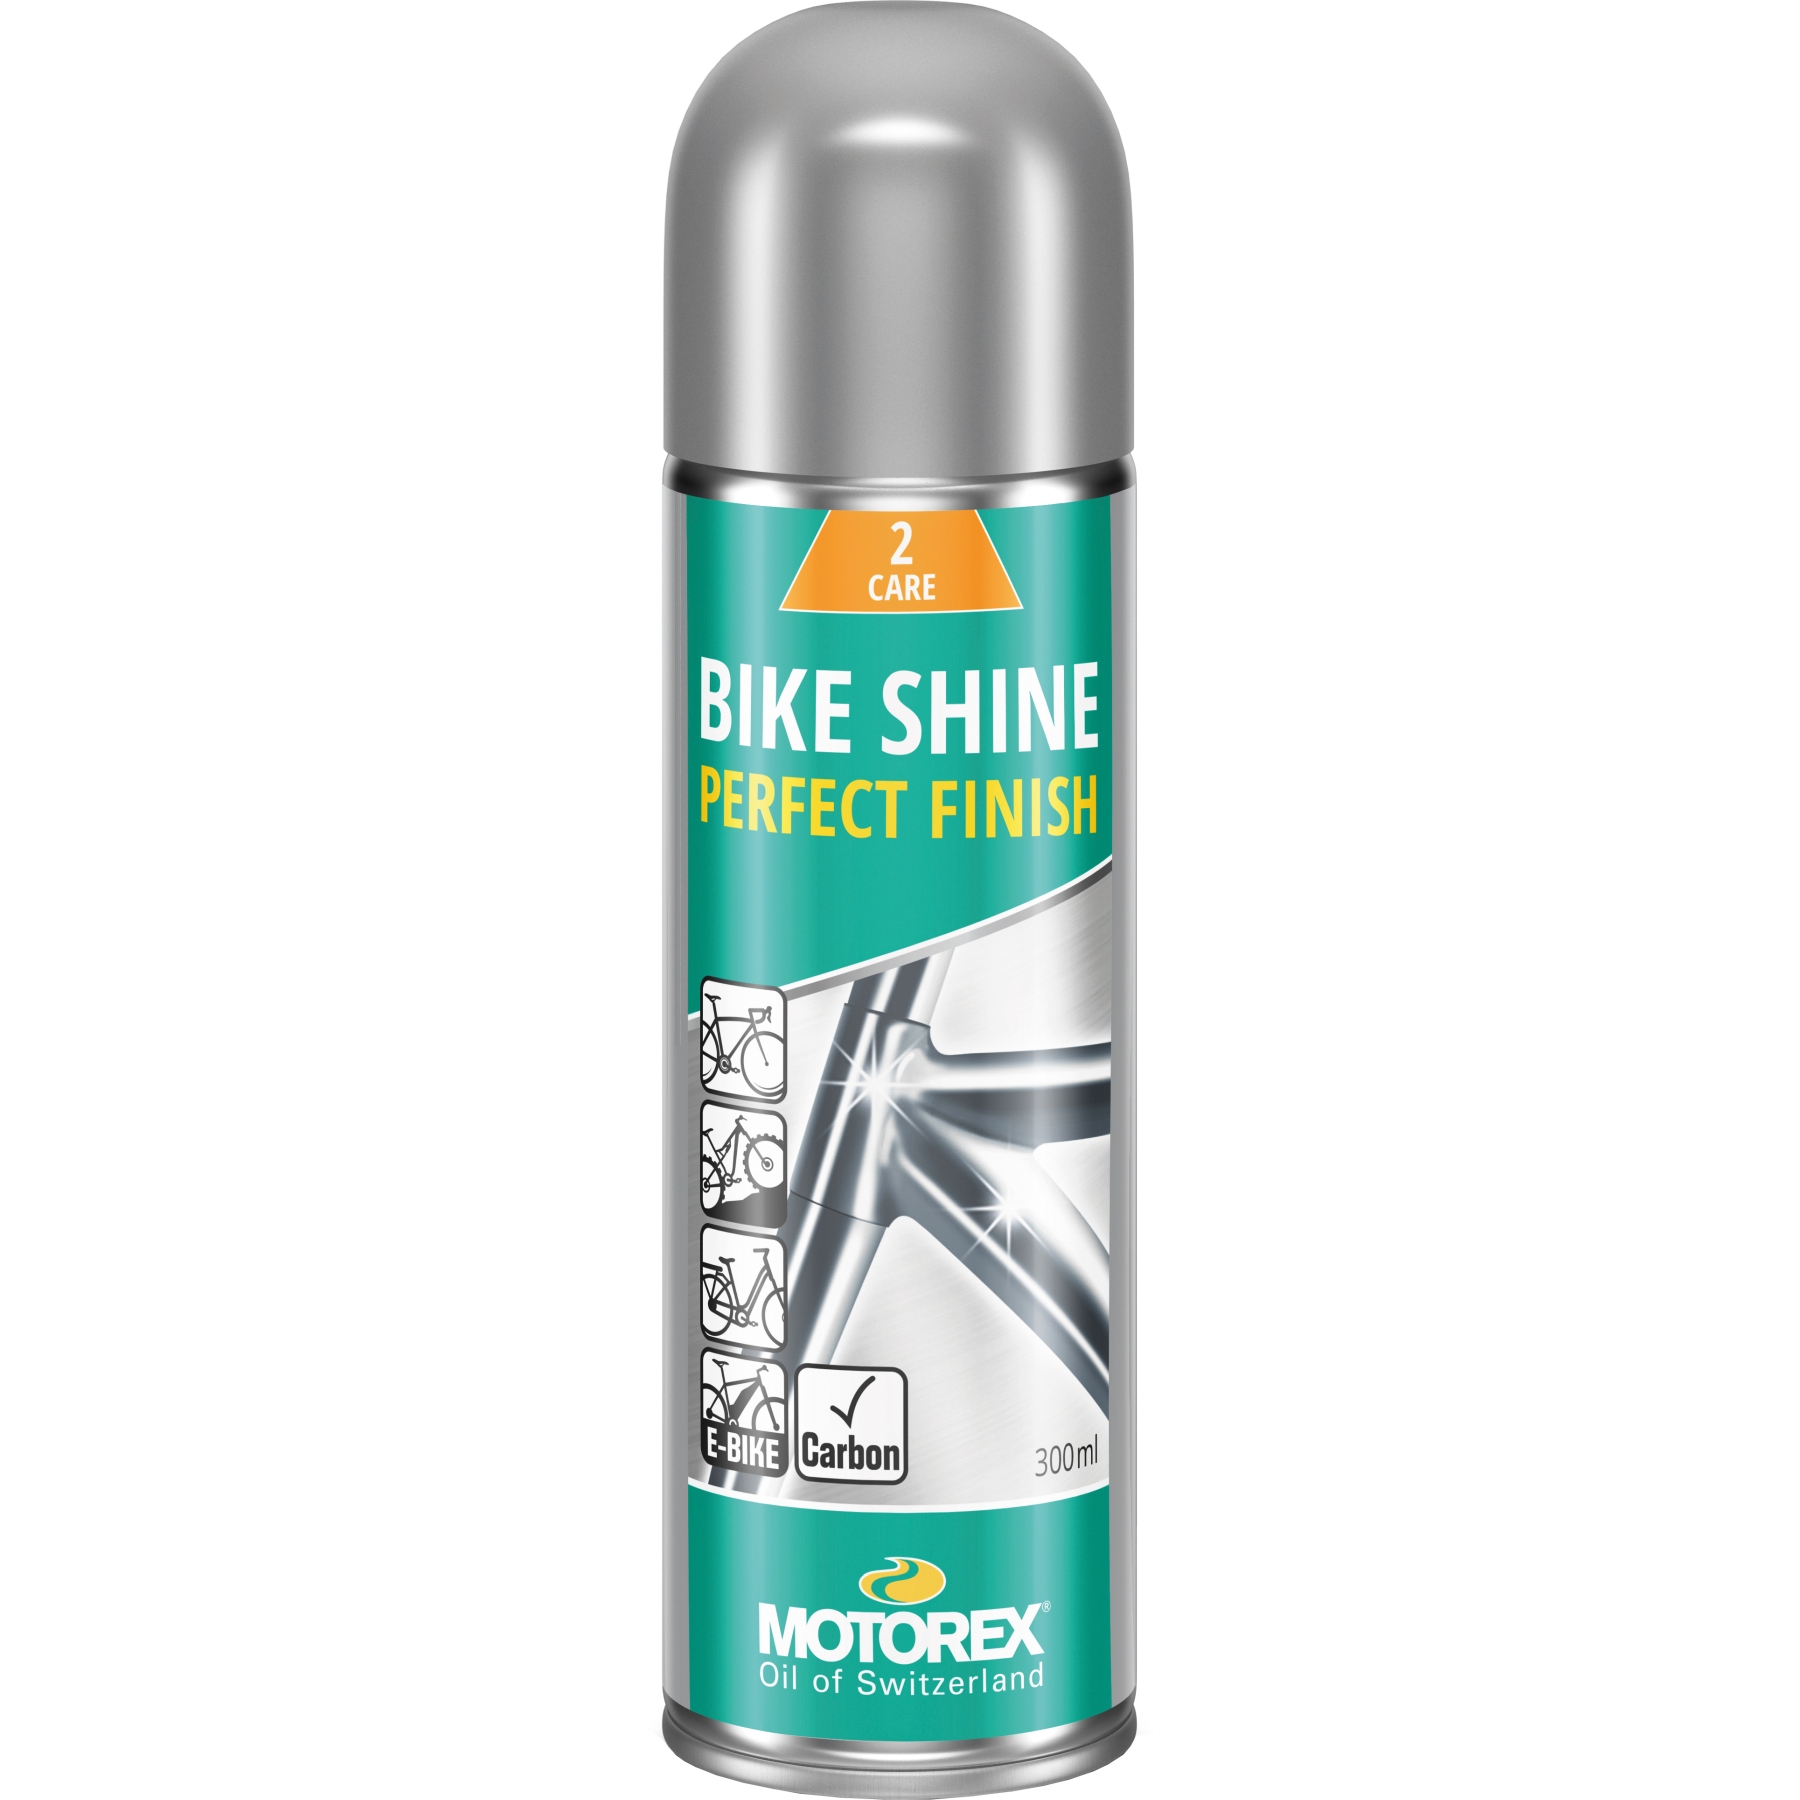 Immagine prodotto da Motorex Bike Shine - Care and Protection - Spray - 300ml